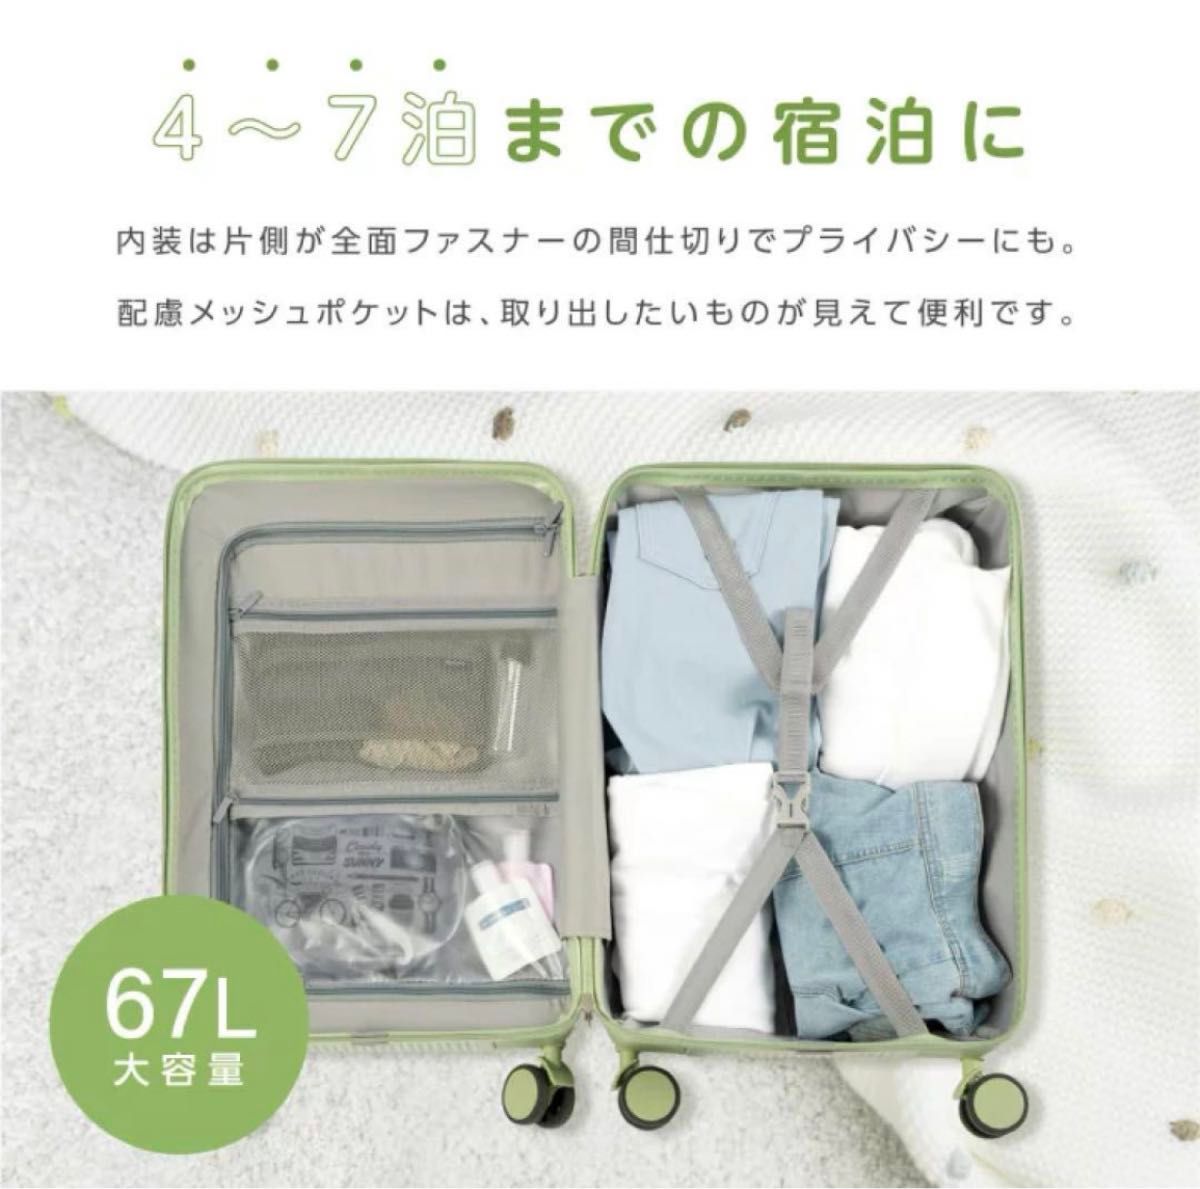 キャリーケース スーツケース 機内持ち込み フロントオープン 可愛い 多機能 